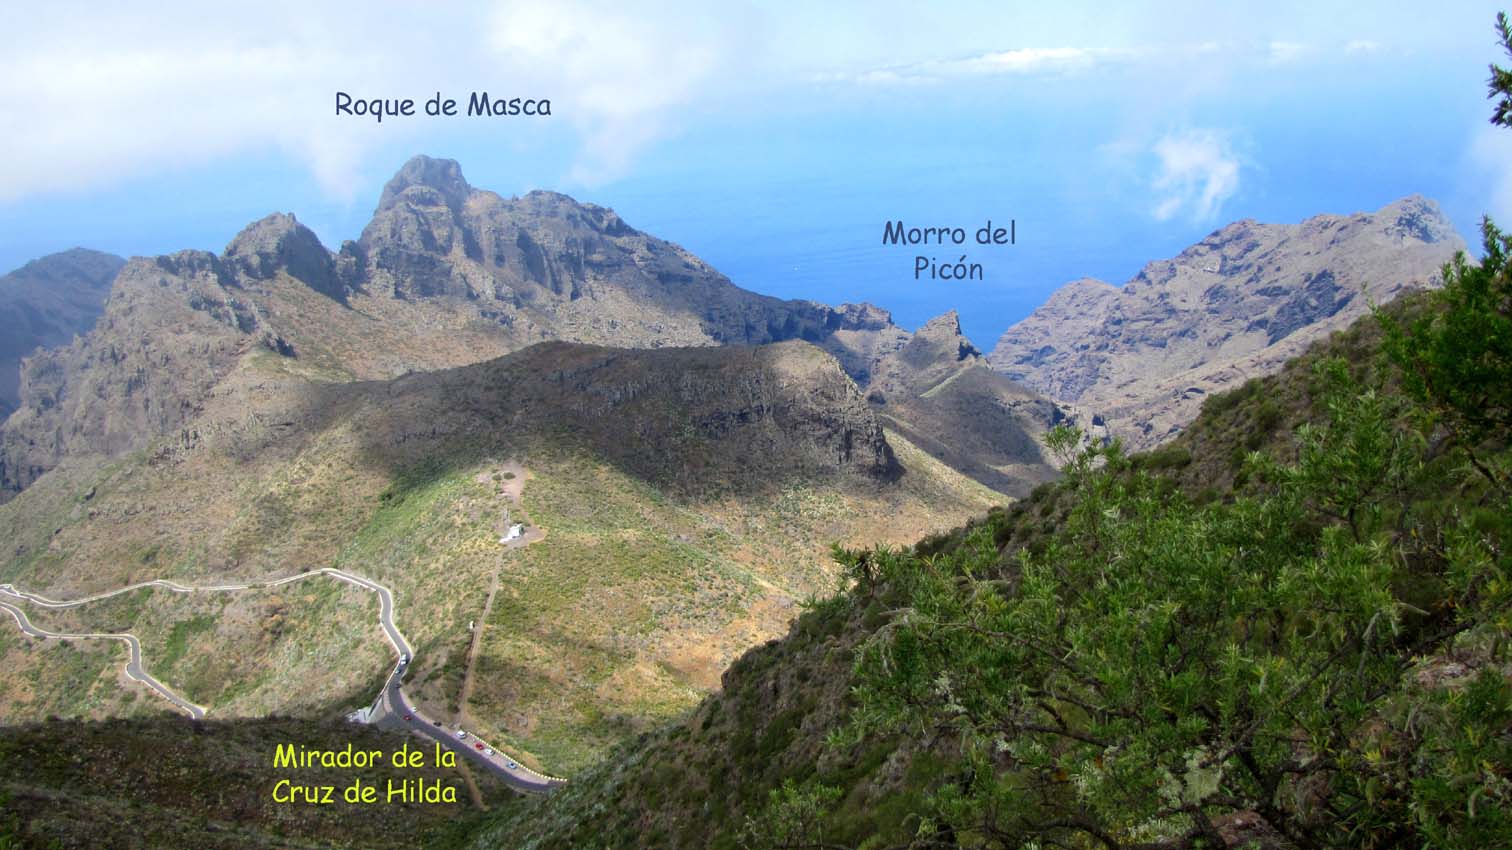 Nous dominons le mirador de la Cruz de Hilda, et nous voyons dans le même axe, le Roque de Masca